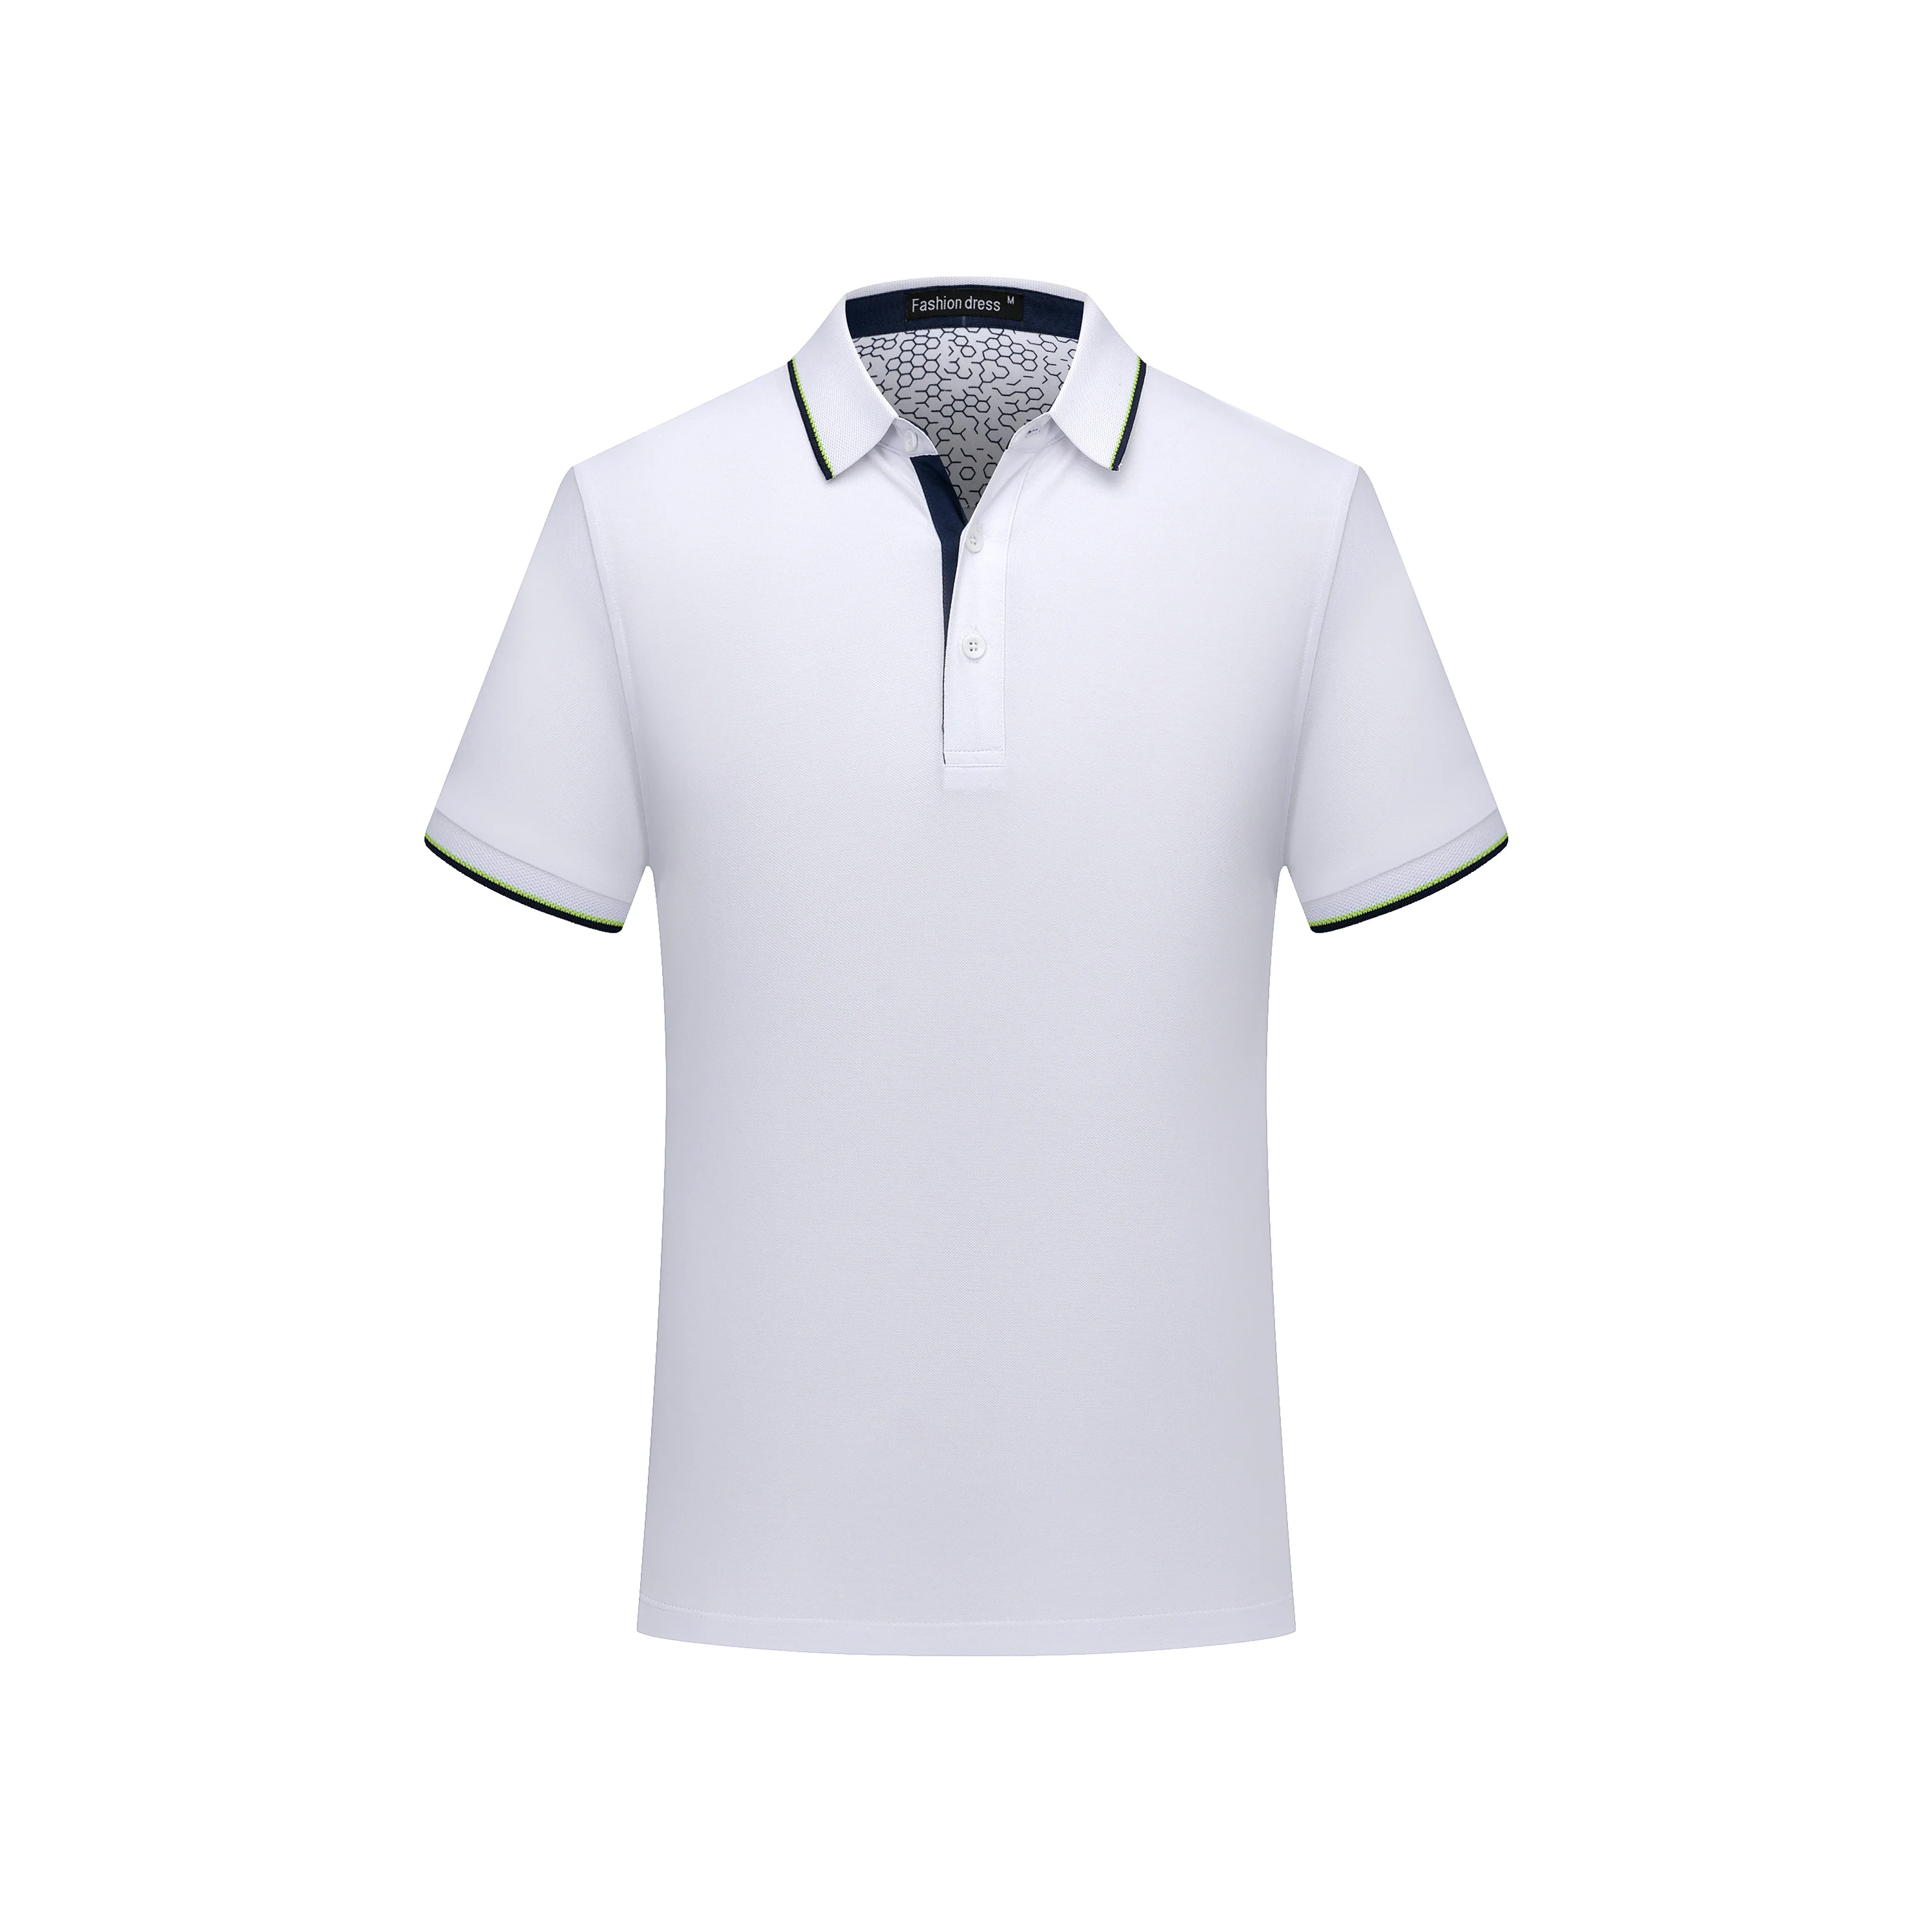 

Men's Polo Shirt Camisa Masculina Shirt Cotton Short Sleeve Shirt Brands Jerseys Summer Sportsjerseysgolftennis Blusas Tops